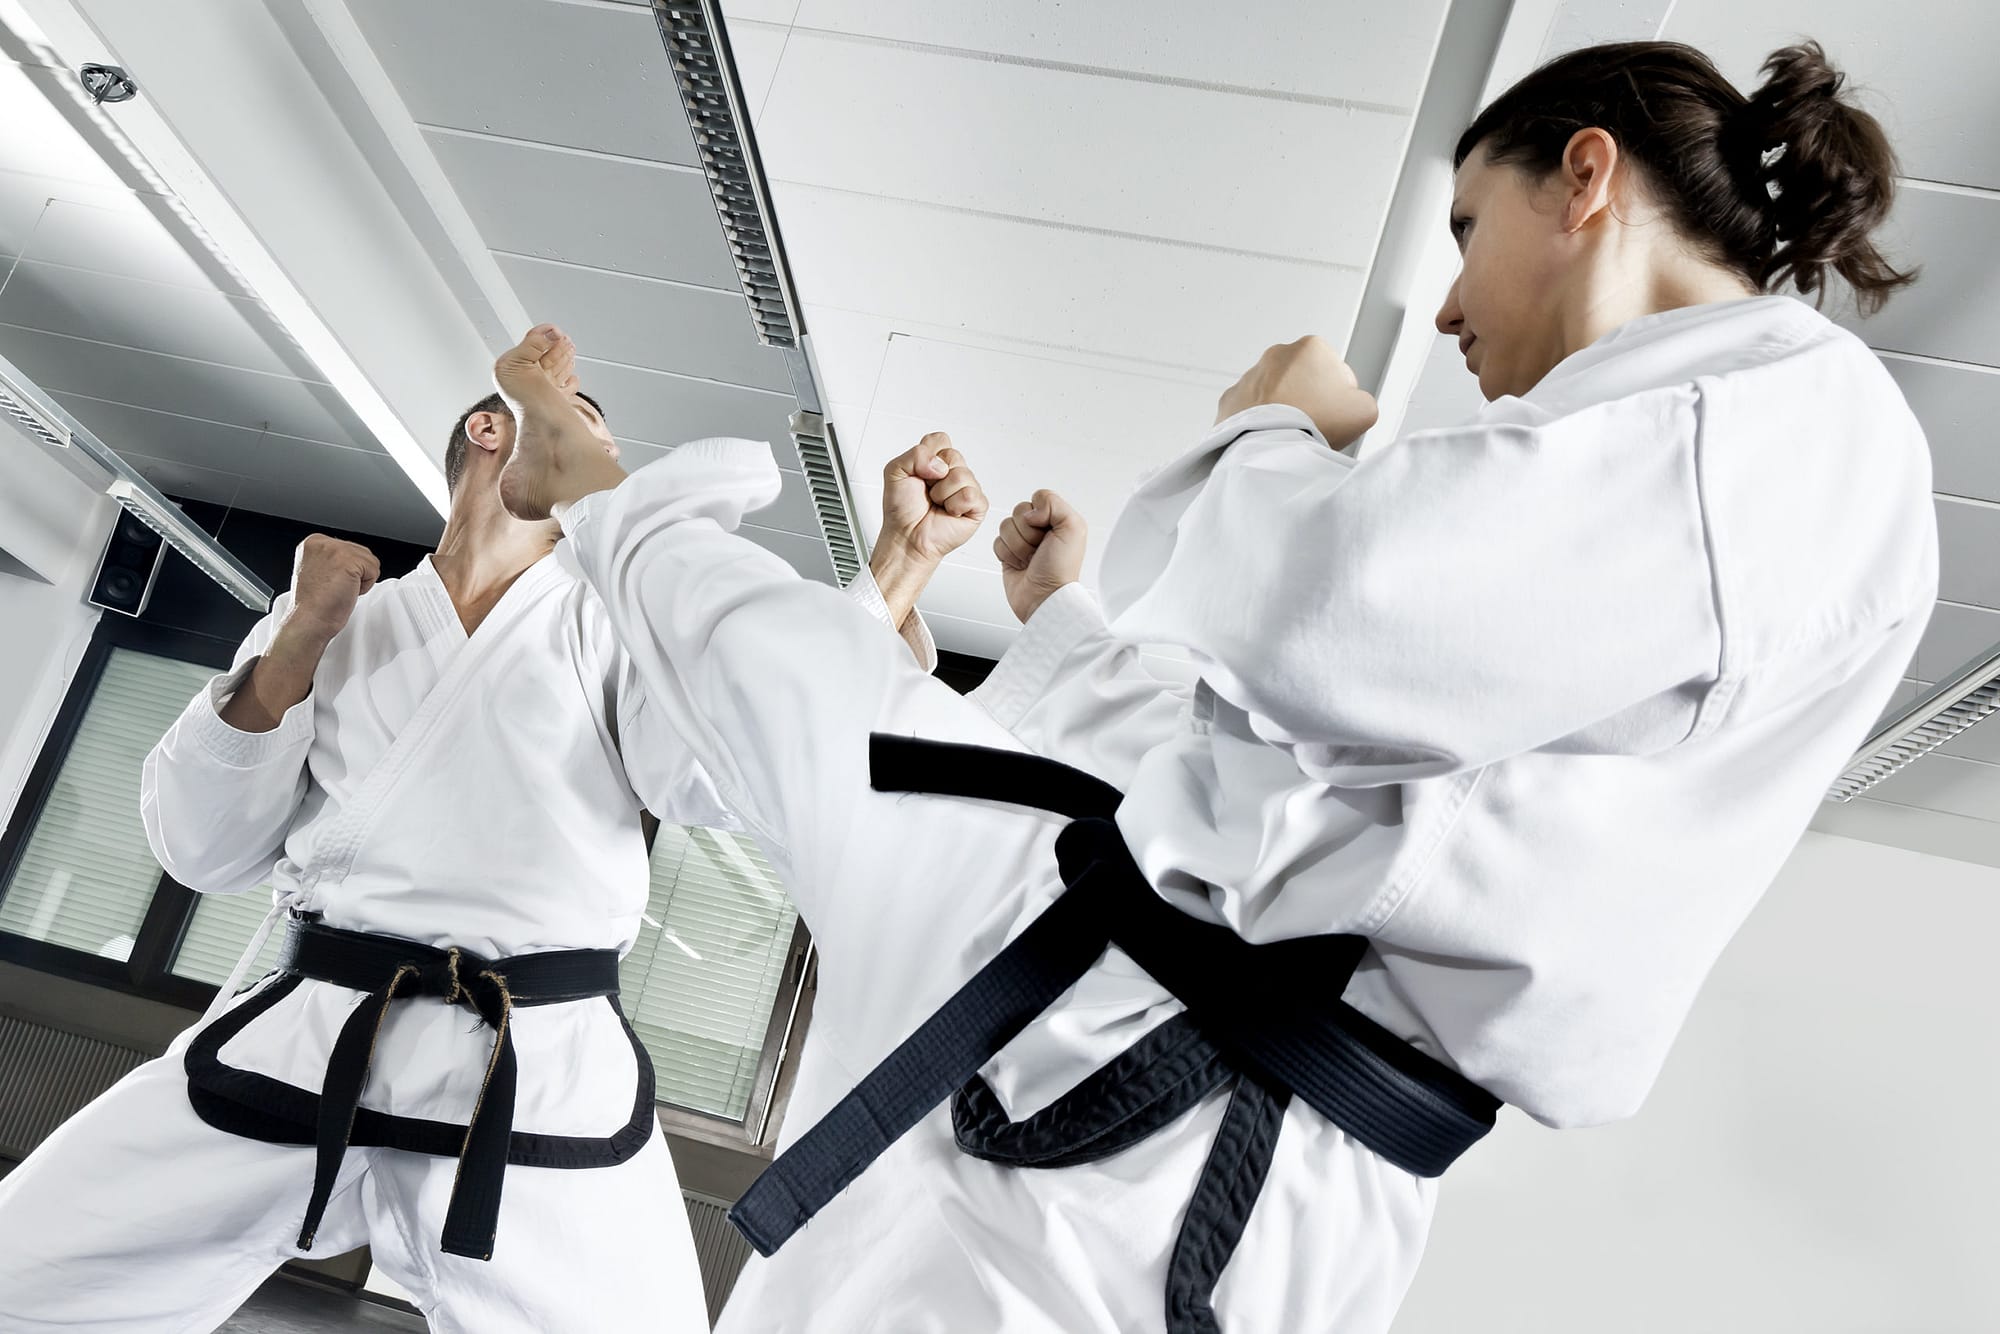 taekwondo is safer after lasik